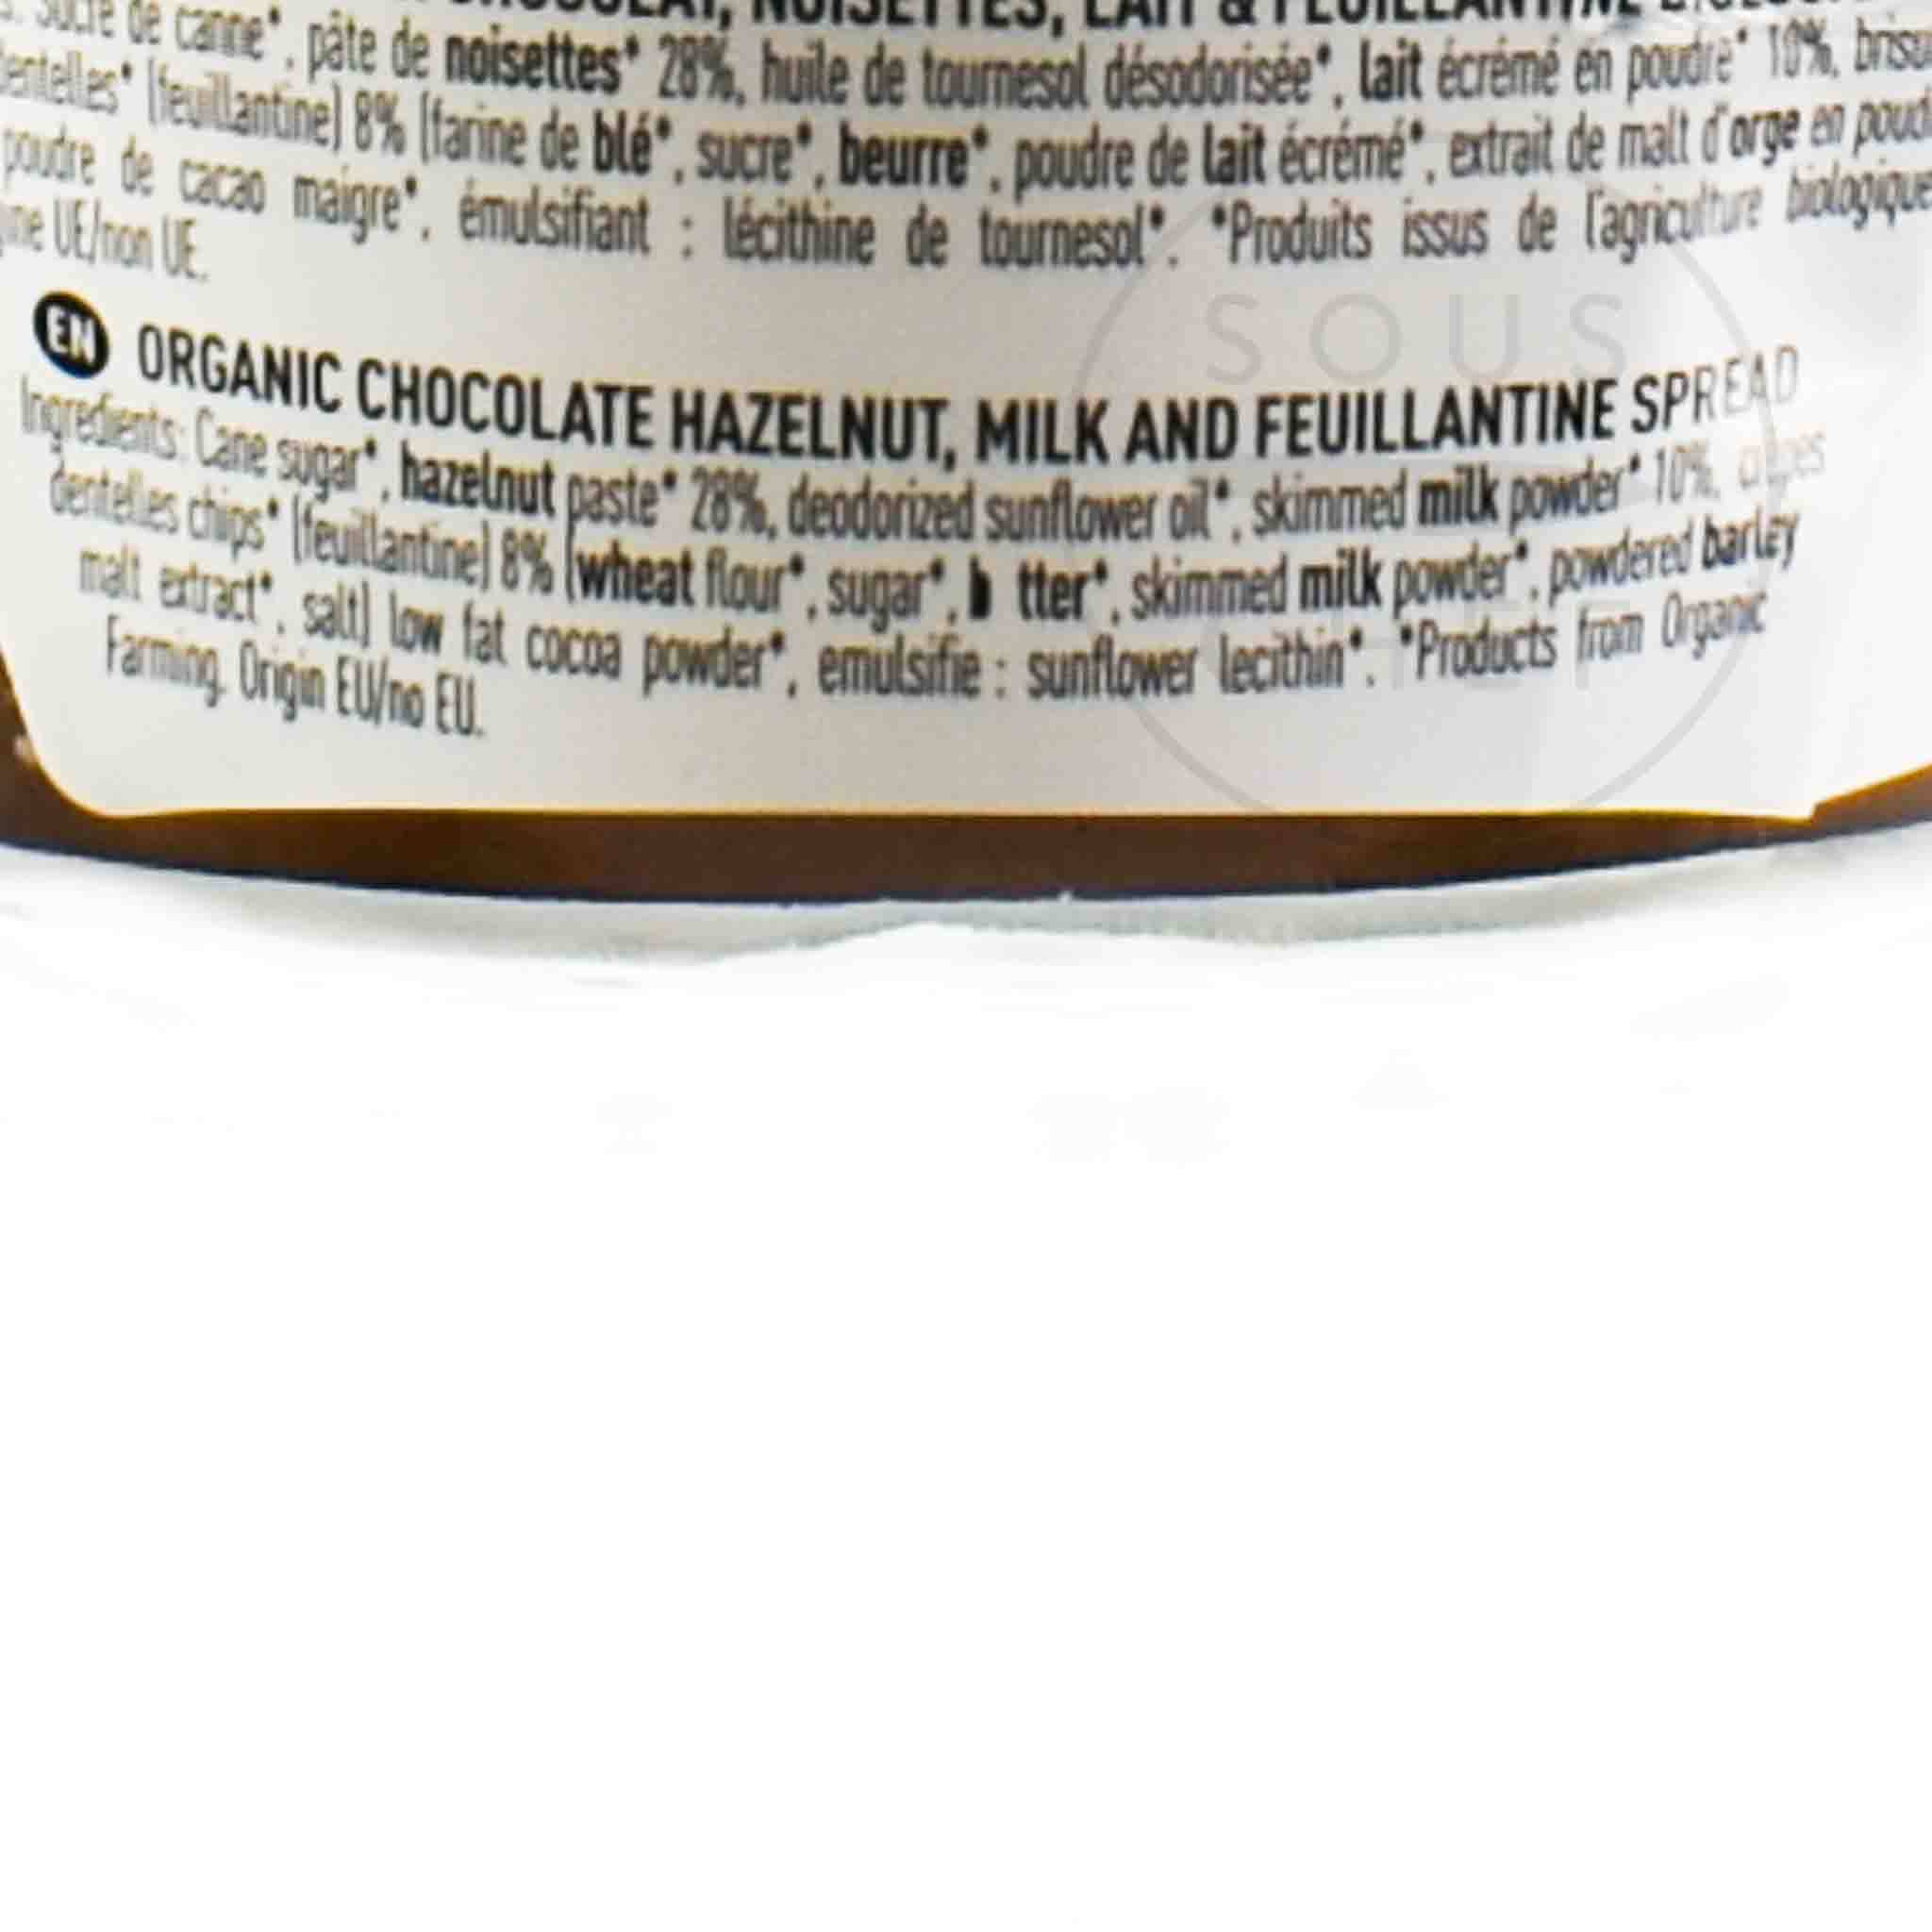 Maison Bremond Organic Hazelnut Milk Feuillantine Spread 220g Ingredients